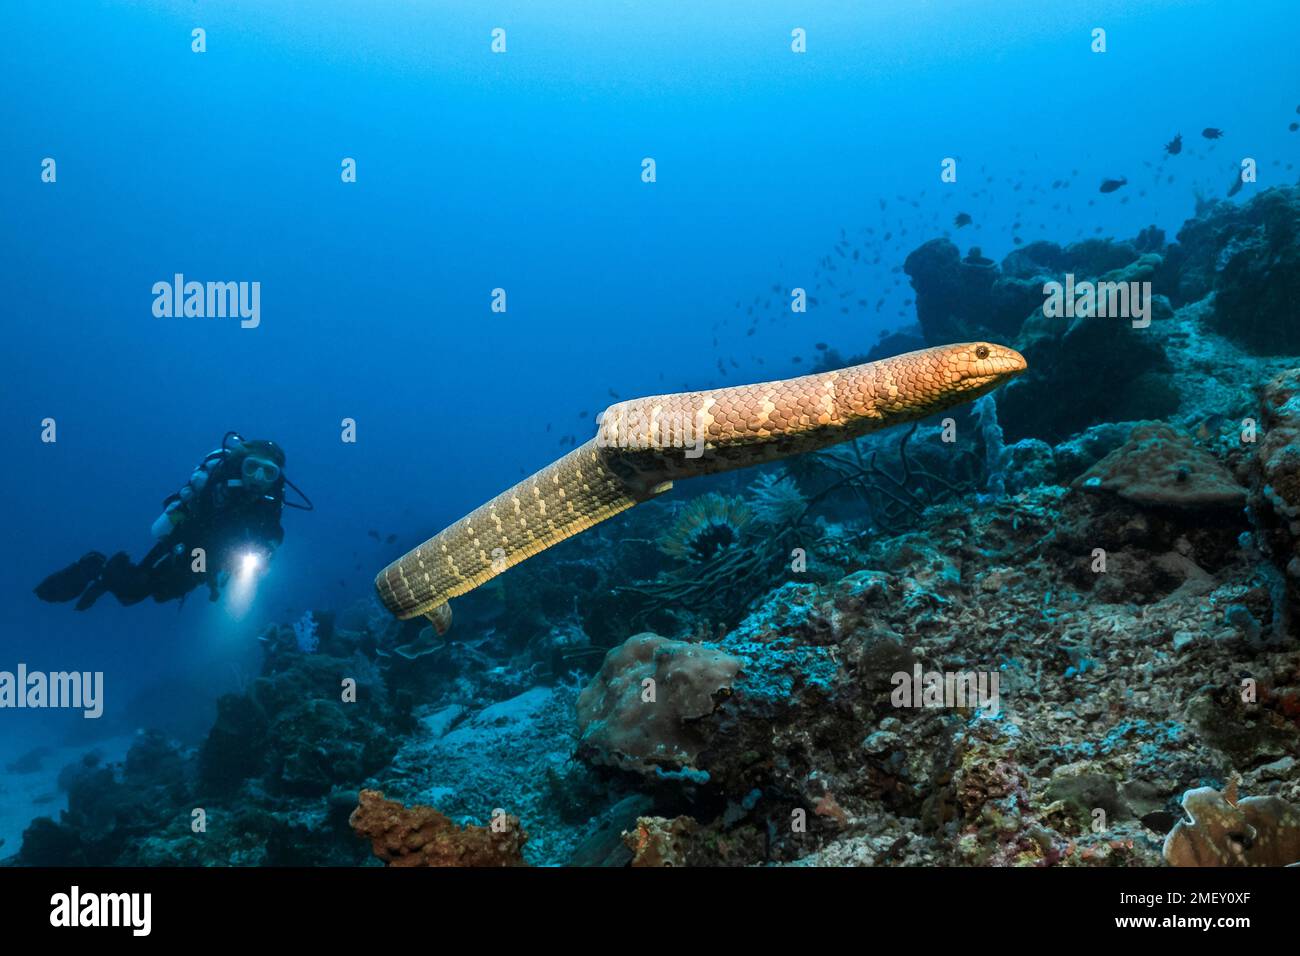 Serpent de mer d'olive, Aipysurus laevis, baignade libre, et plongée sous-marine, îles Kei, Îles oubliées, Moluques, Indonésie, Indo-Océan Pacifique Banque D'Images